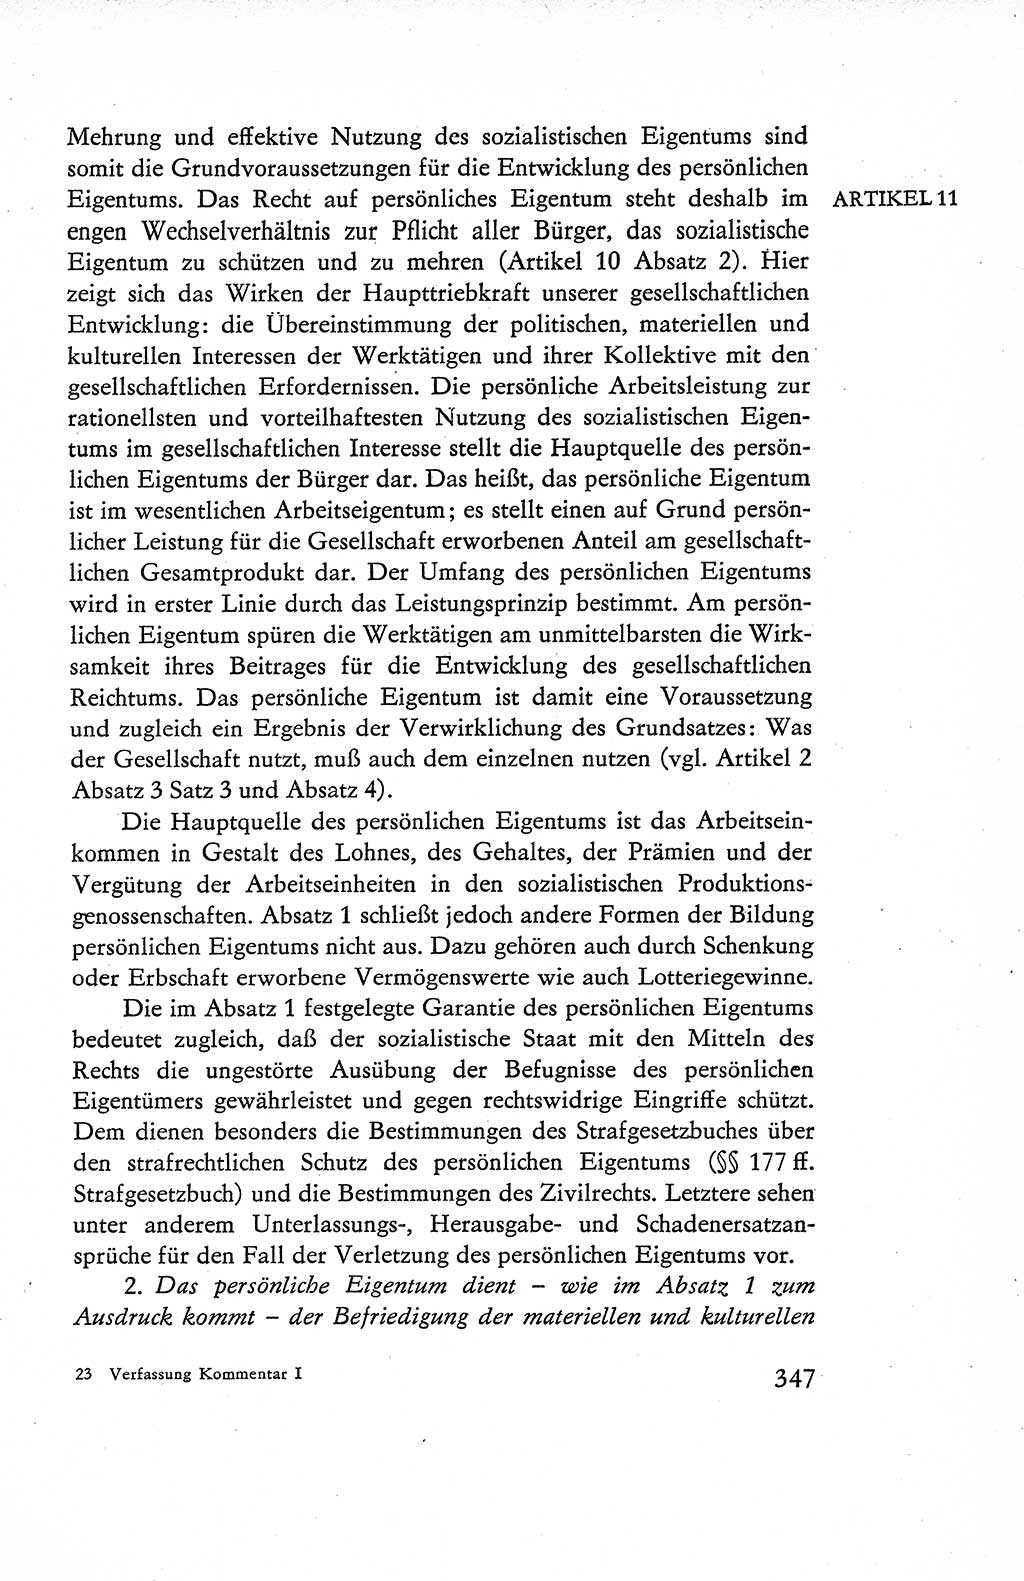 Verfassung der Deutschen Demokratischen Republik (DDR), Dokumente, Kommentar 1969, Band 1, Seite 347 (Verf. DDR Dok. Komm. 1969, Bd. 1, S. 347)